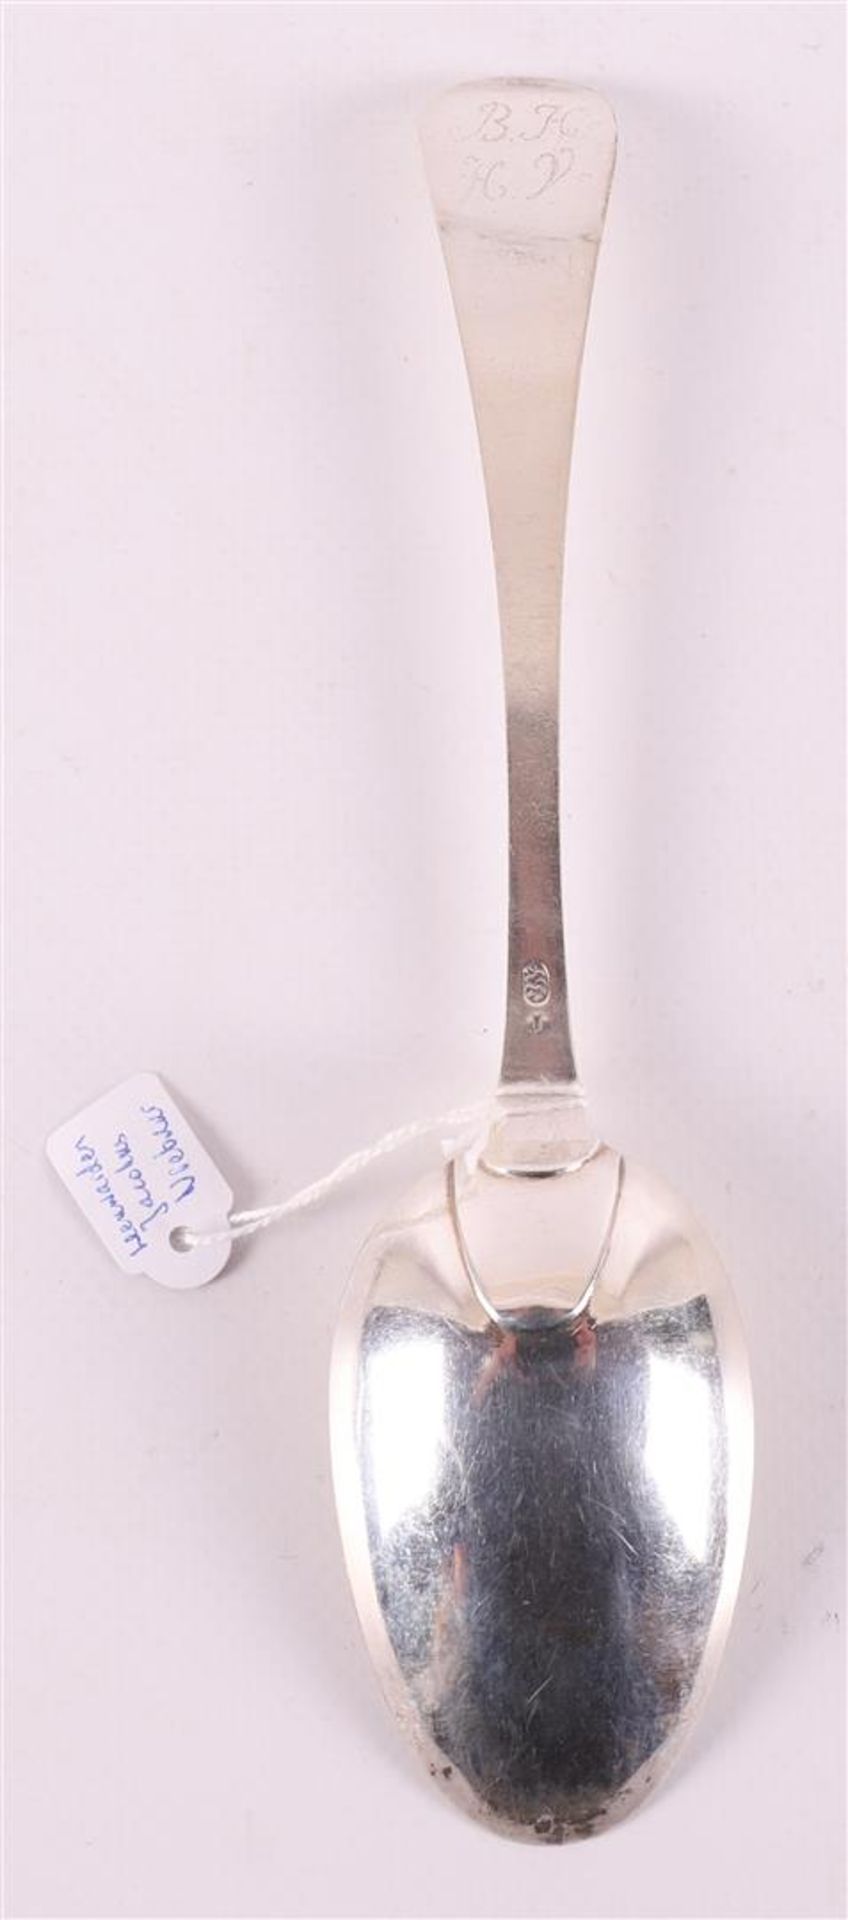 Four first grade content 925/1000 silver spoons, Friesland, Leeuwarden, - Bild 7 aus 7